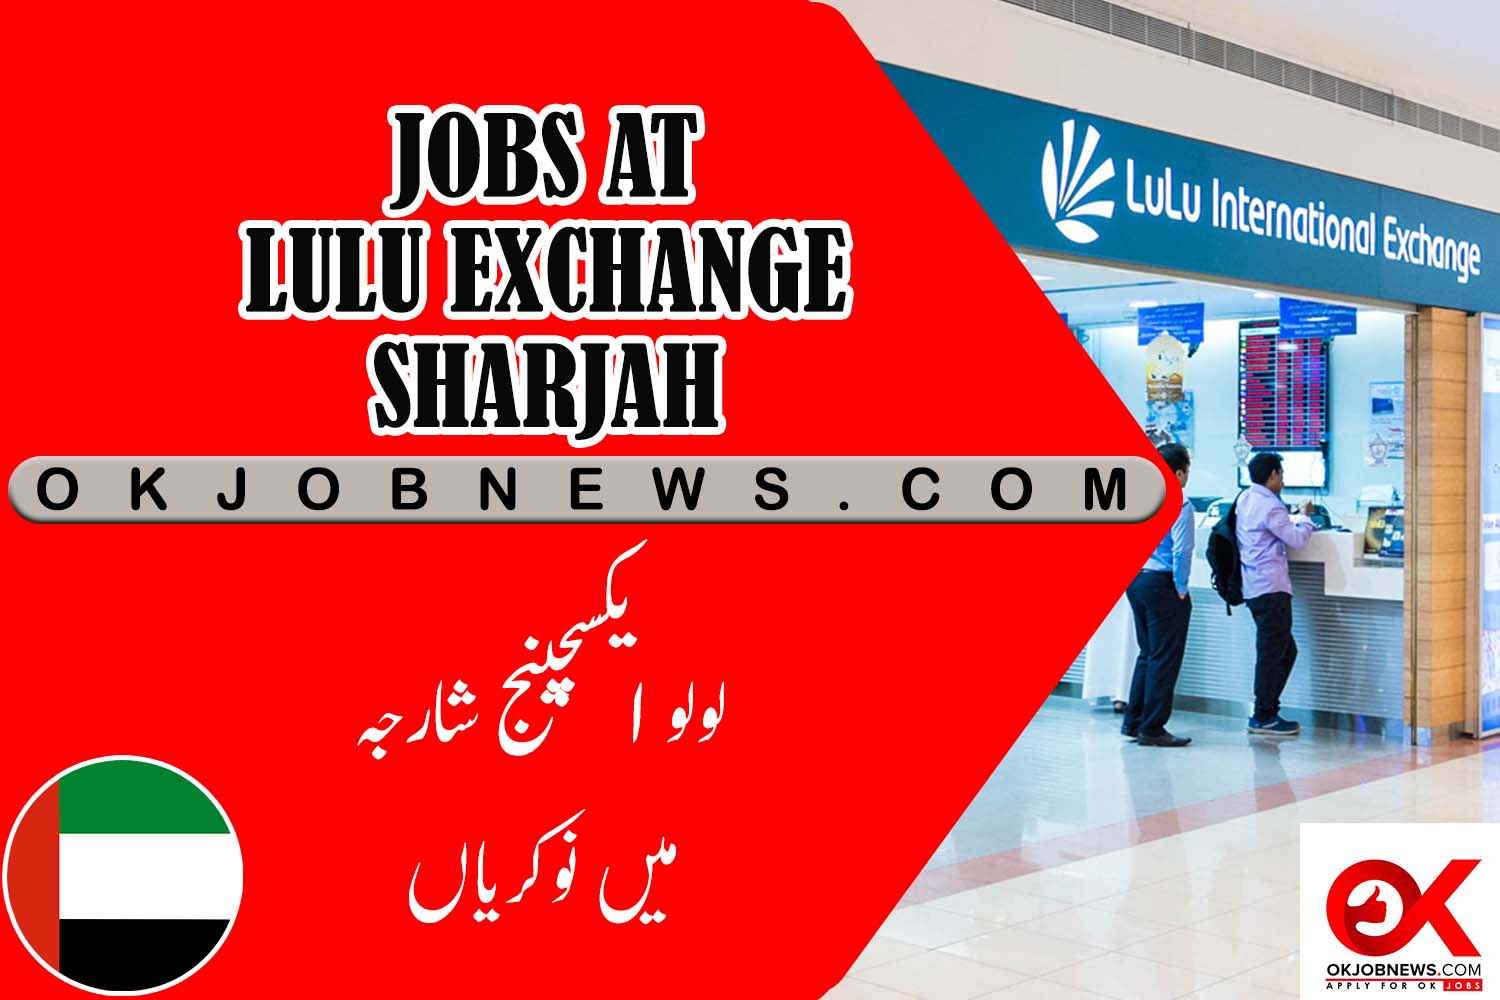 Lulu Exchange in Sharjah